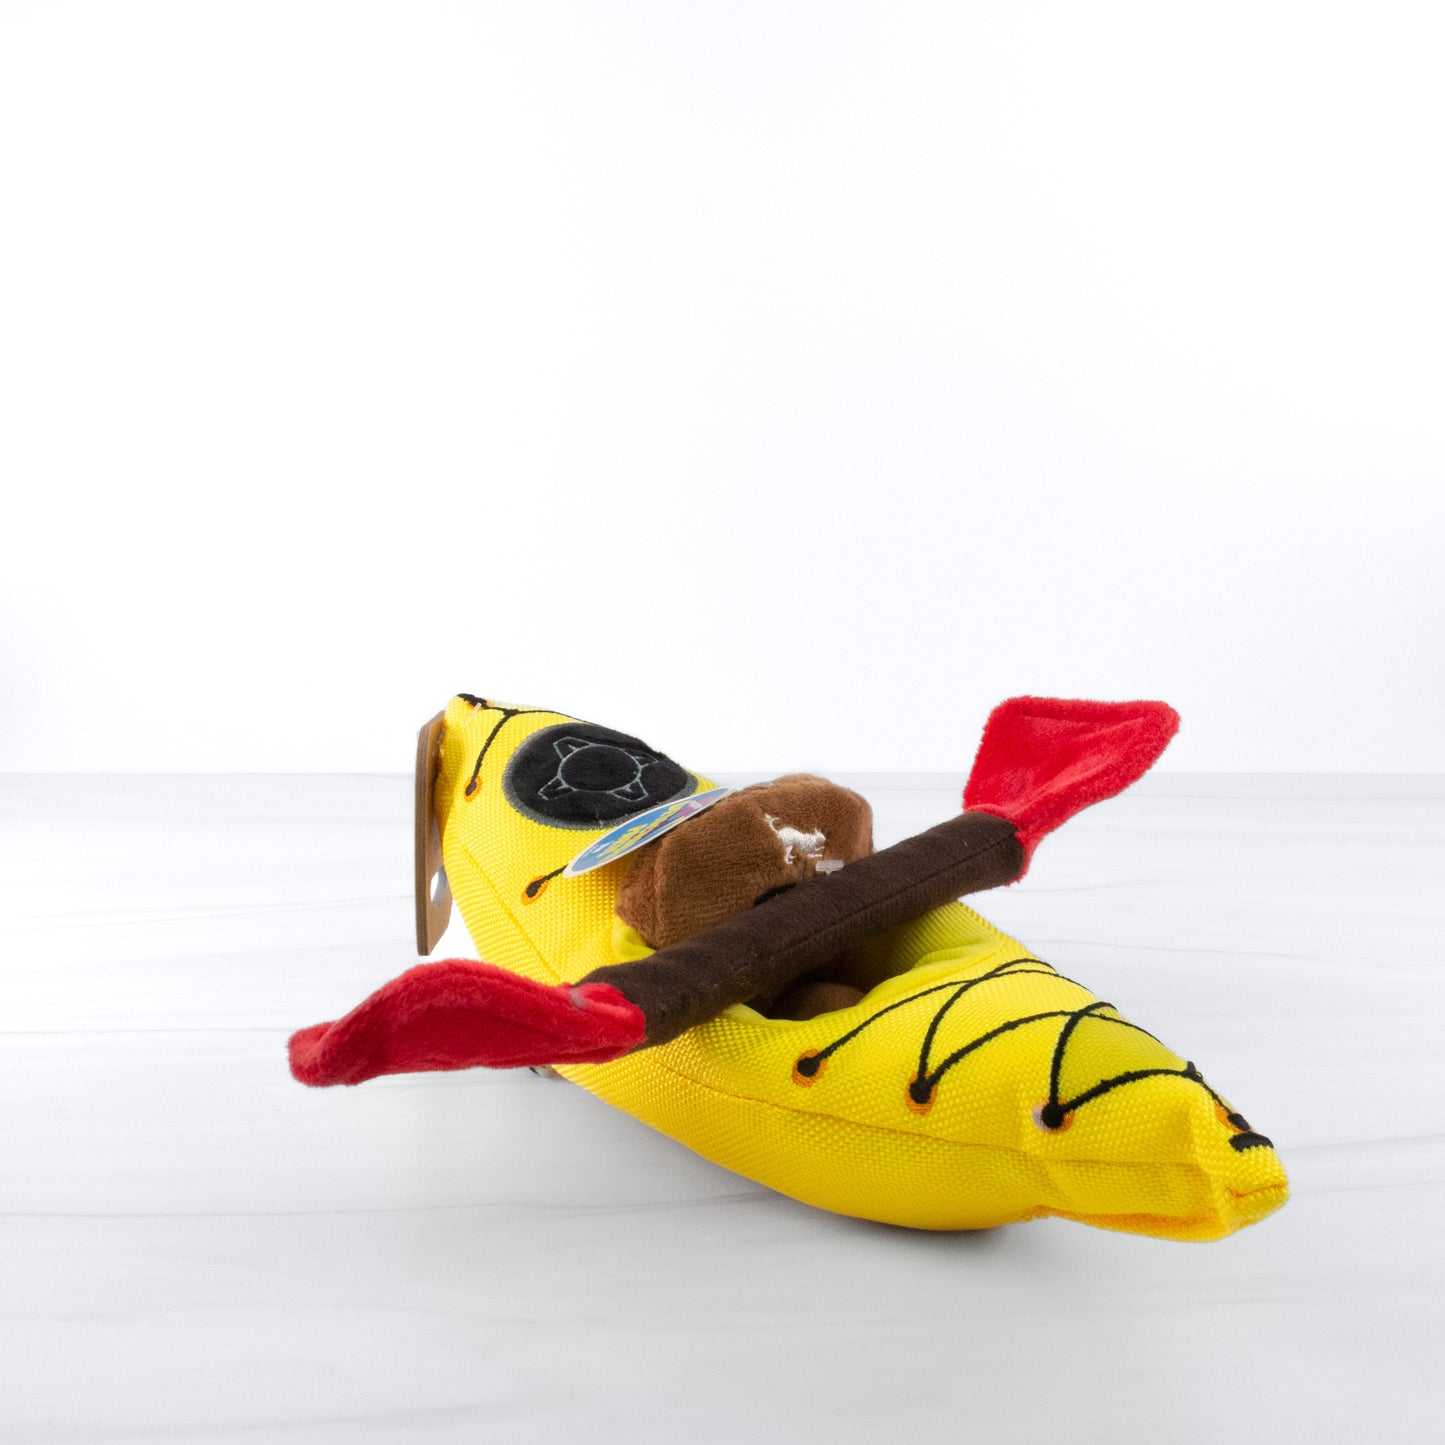 K9 Kayak Toy